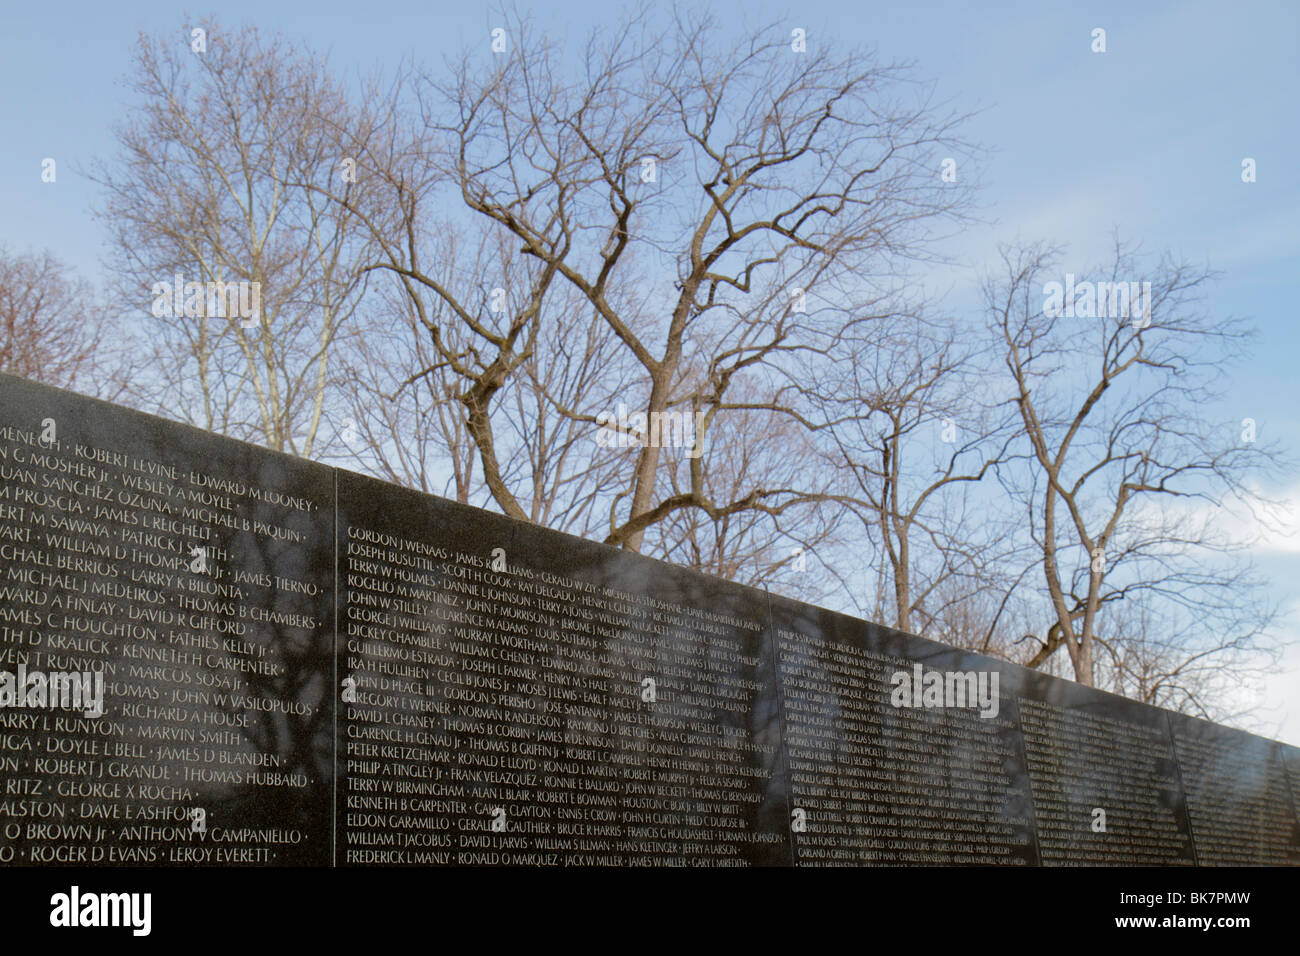 Washington DC, National Mall & Memorial Parks, Vietnam Veterans Memorial Wall, guerre du Vietnam, monument, architecte Maya Lin. Soldat tué, noms, héros, arbre, wi Banque D'Images